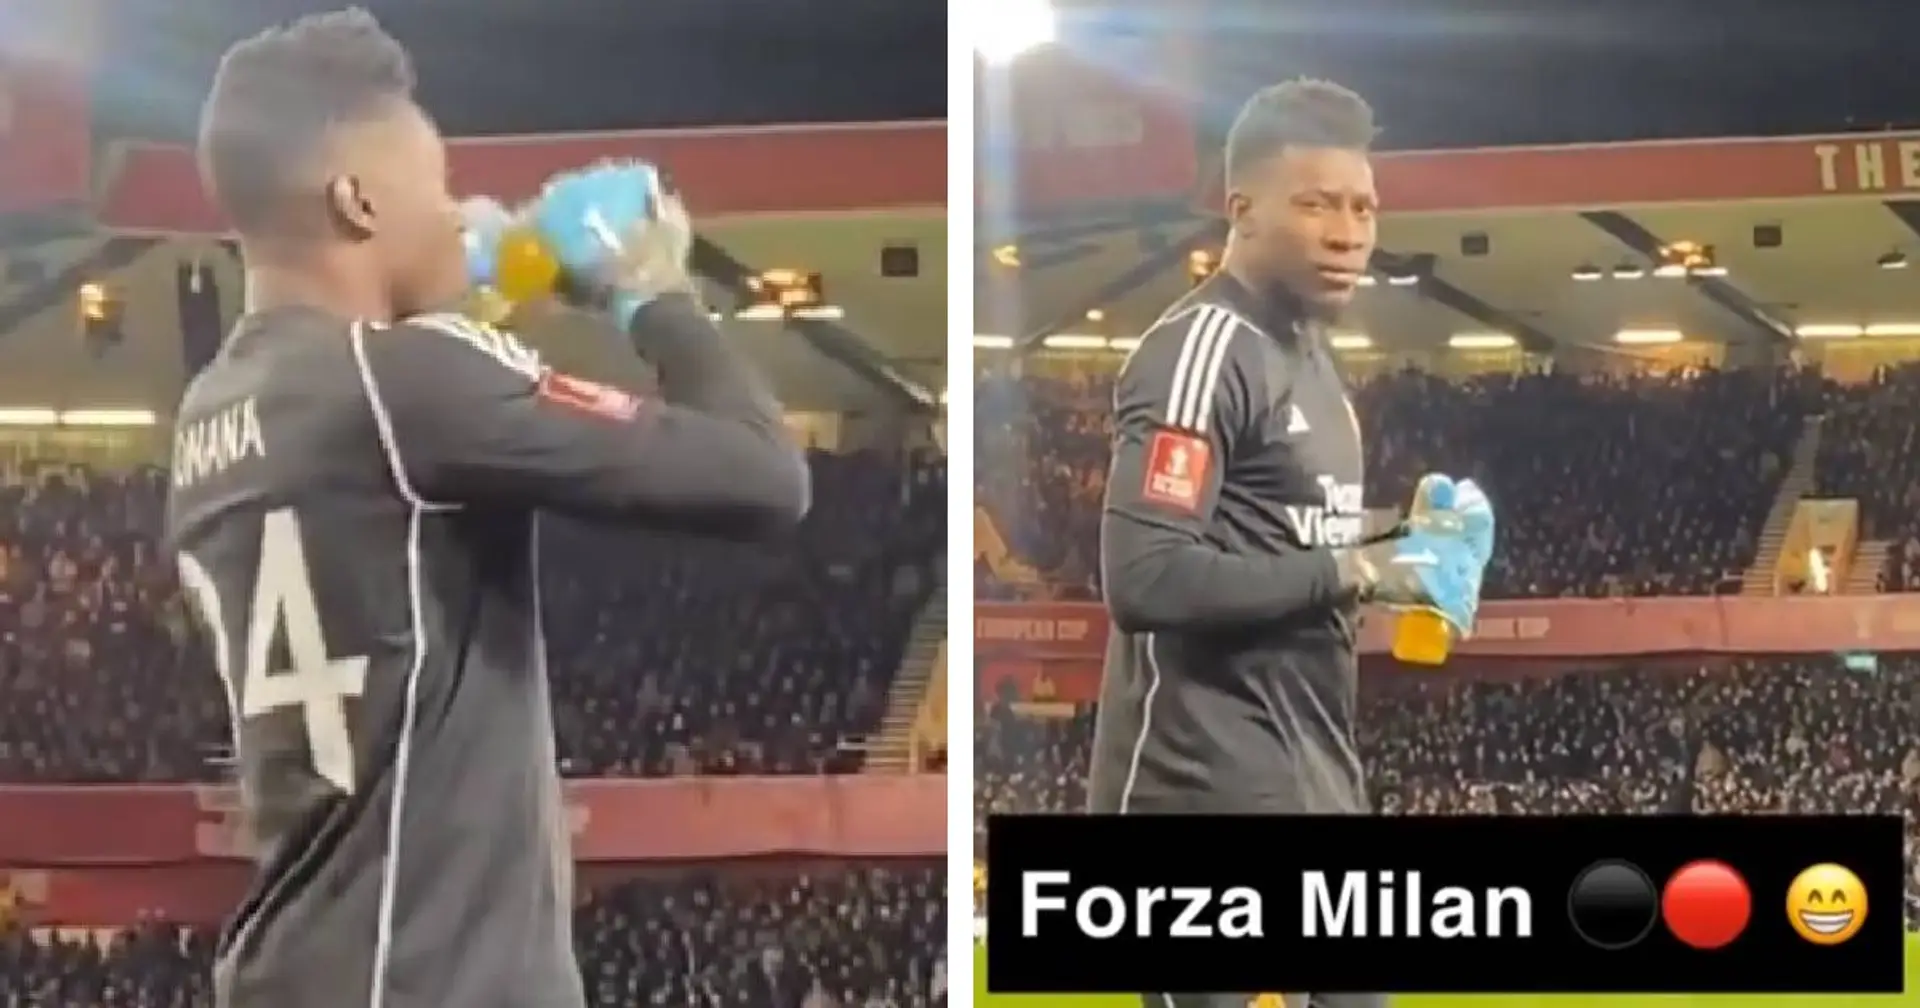 "Forza Milan, me**a Inter!": un tifoso provoca Onana, la reazione dell'ex nerazzurro è virale 